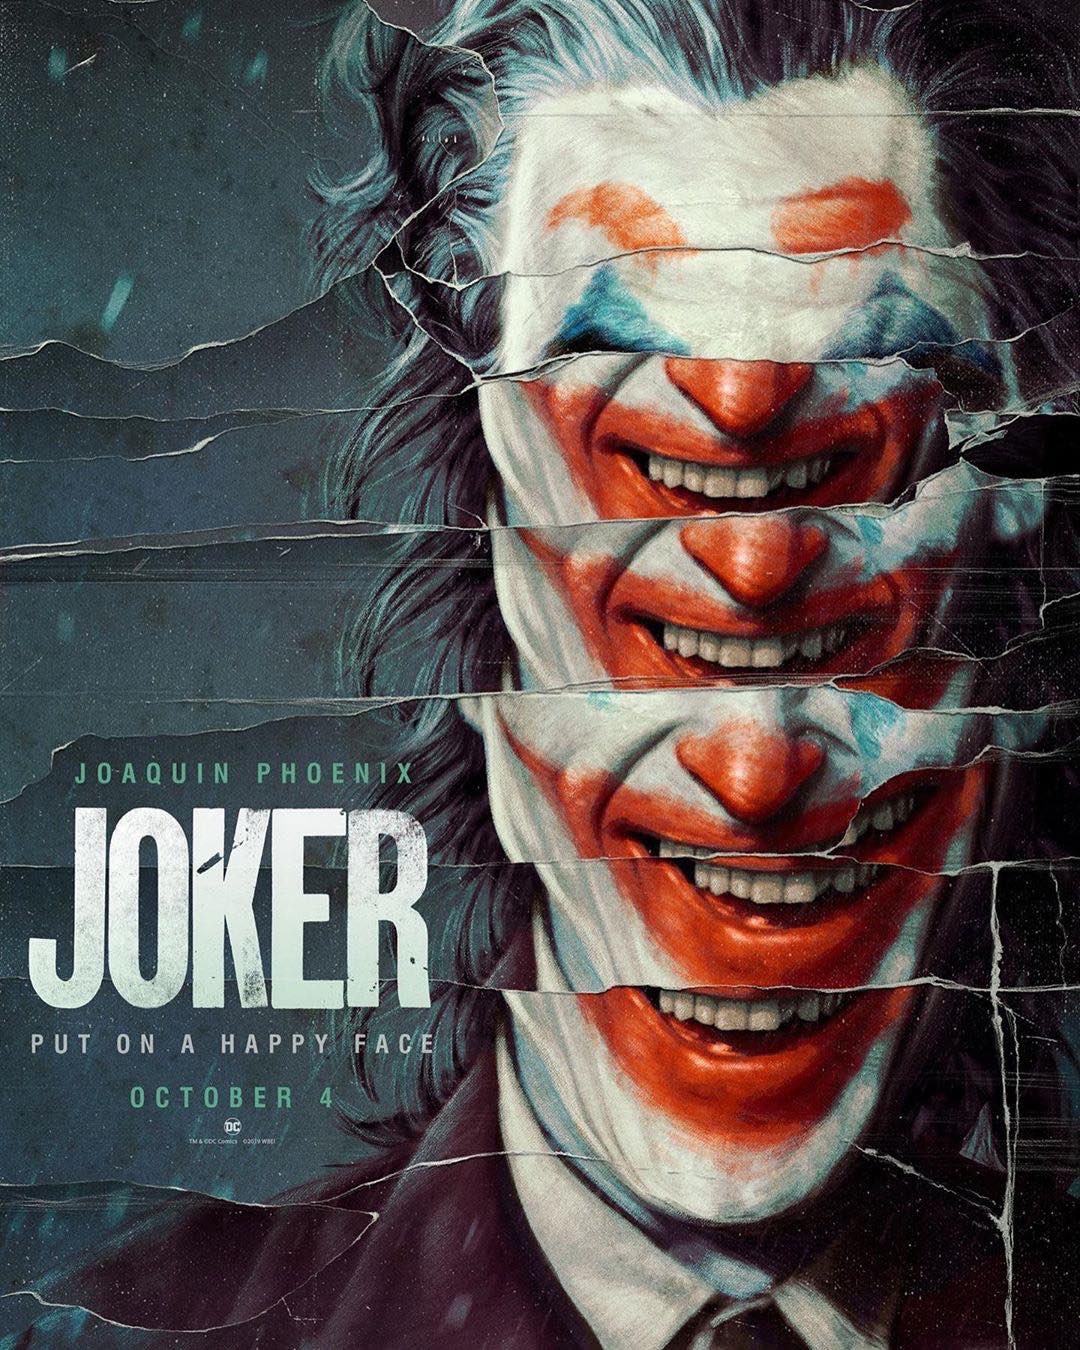 Peter Albrechtsen on Twitter: "Filmplakater har en frustrerende tendens til at ligne hinanden alt for meget. Men de nye Joker-plakater er der stil over. Glæder mig til film. https://t.co/v529FEqz0F" Twitter